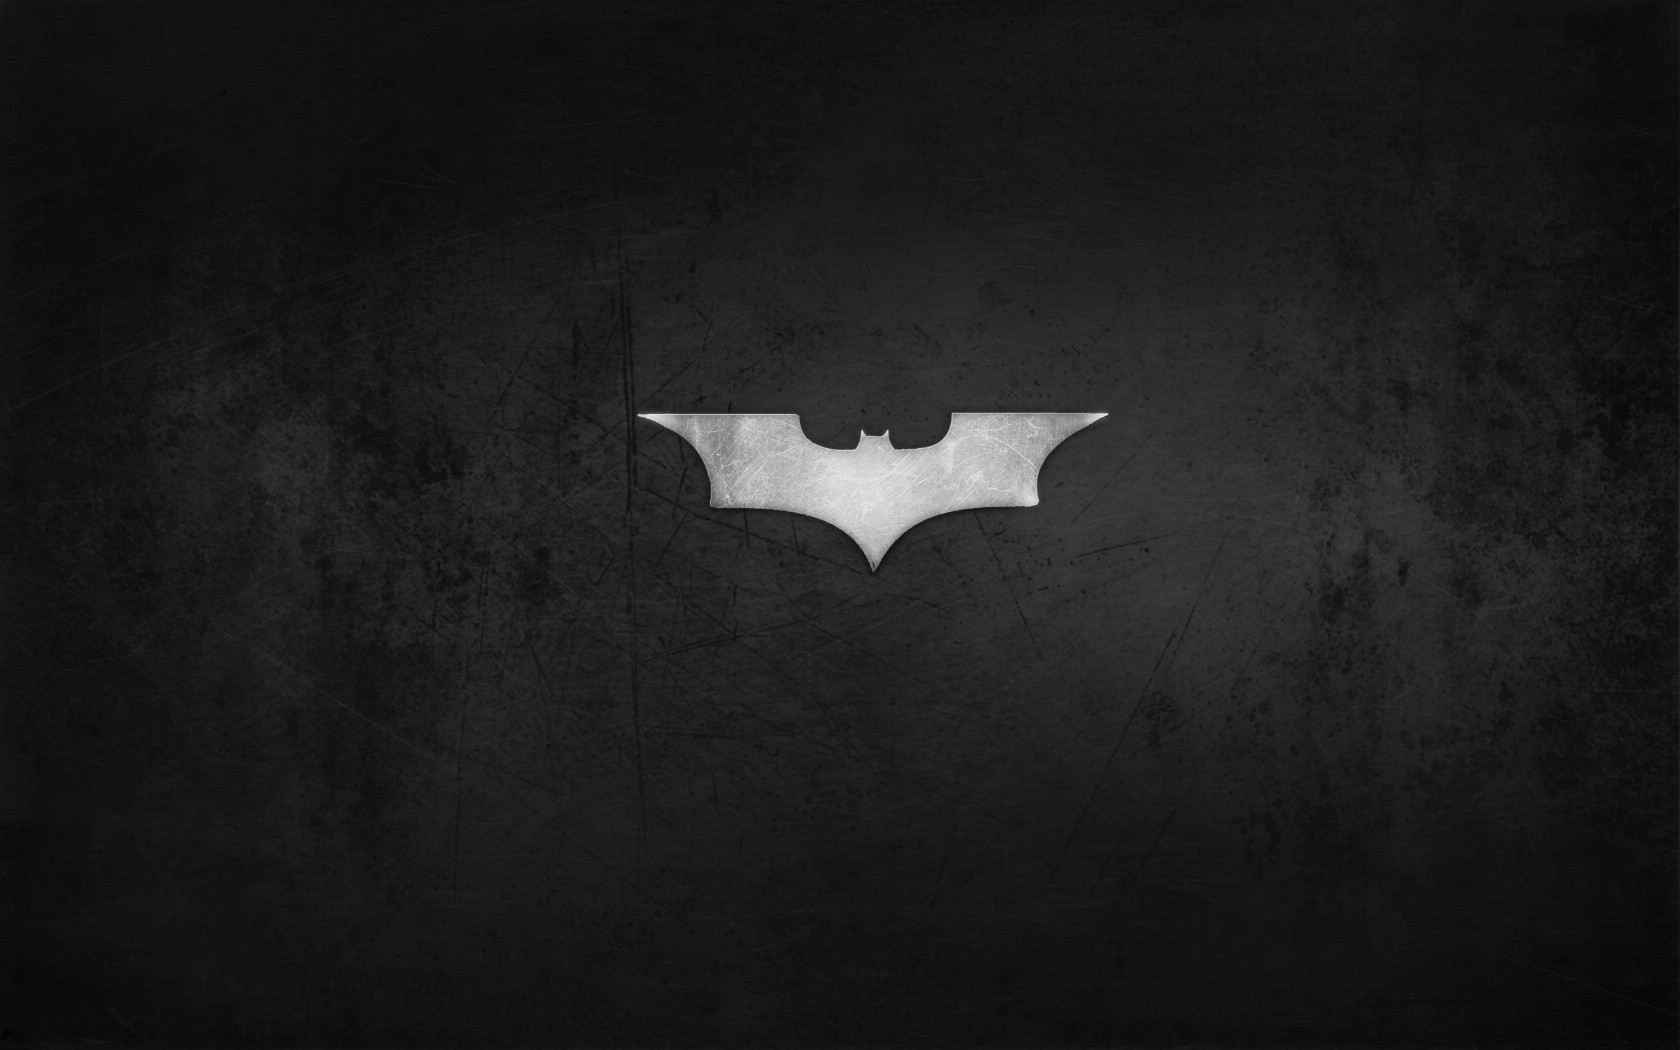 壁纸1680x1050蝙蝠侠 宽屏 桌酷精选一图 壁纸5壁纸 蝙蝠侠（宽屏）精壁纸 蝙蝠侠（宽屏）精图片 蝙蝠侠（宽屏）精素材 精选壁纸 精选图库 精选图片素材桌面壁纸